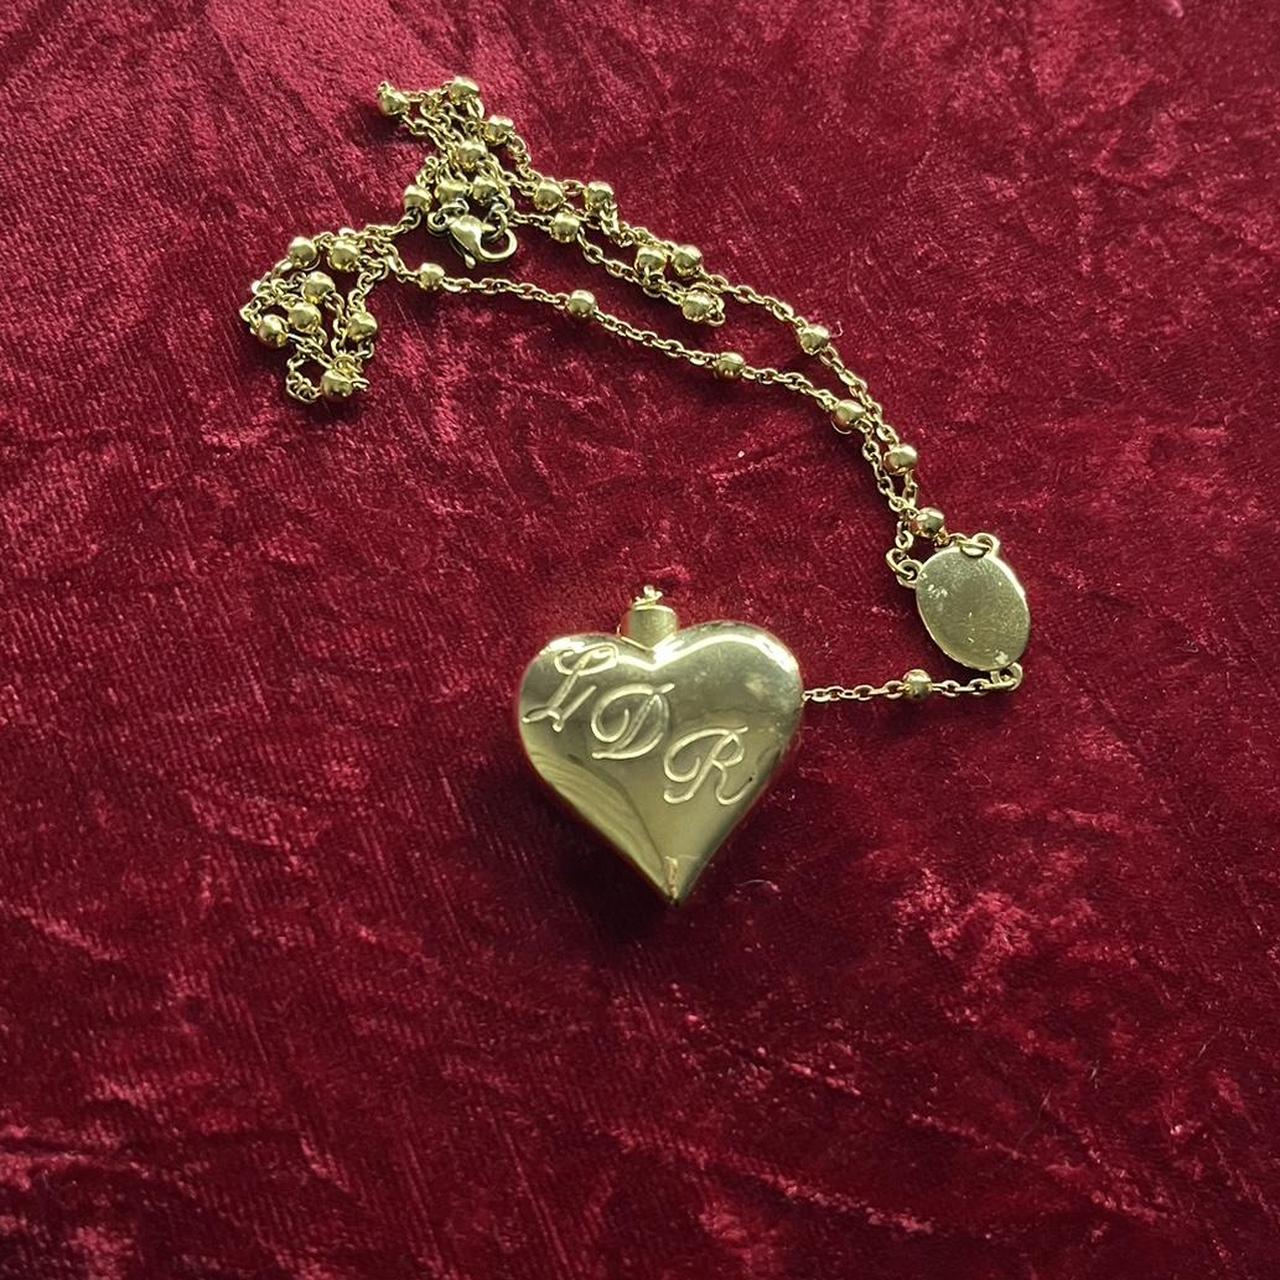 Lana Del Rey Style Heart Necklace/rosary - Etsy